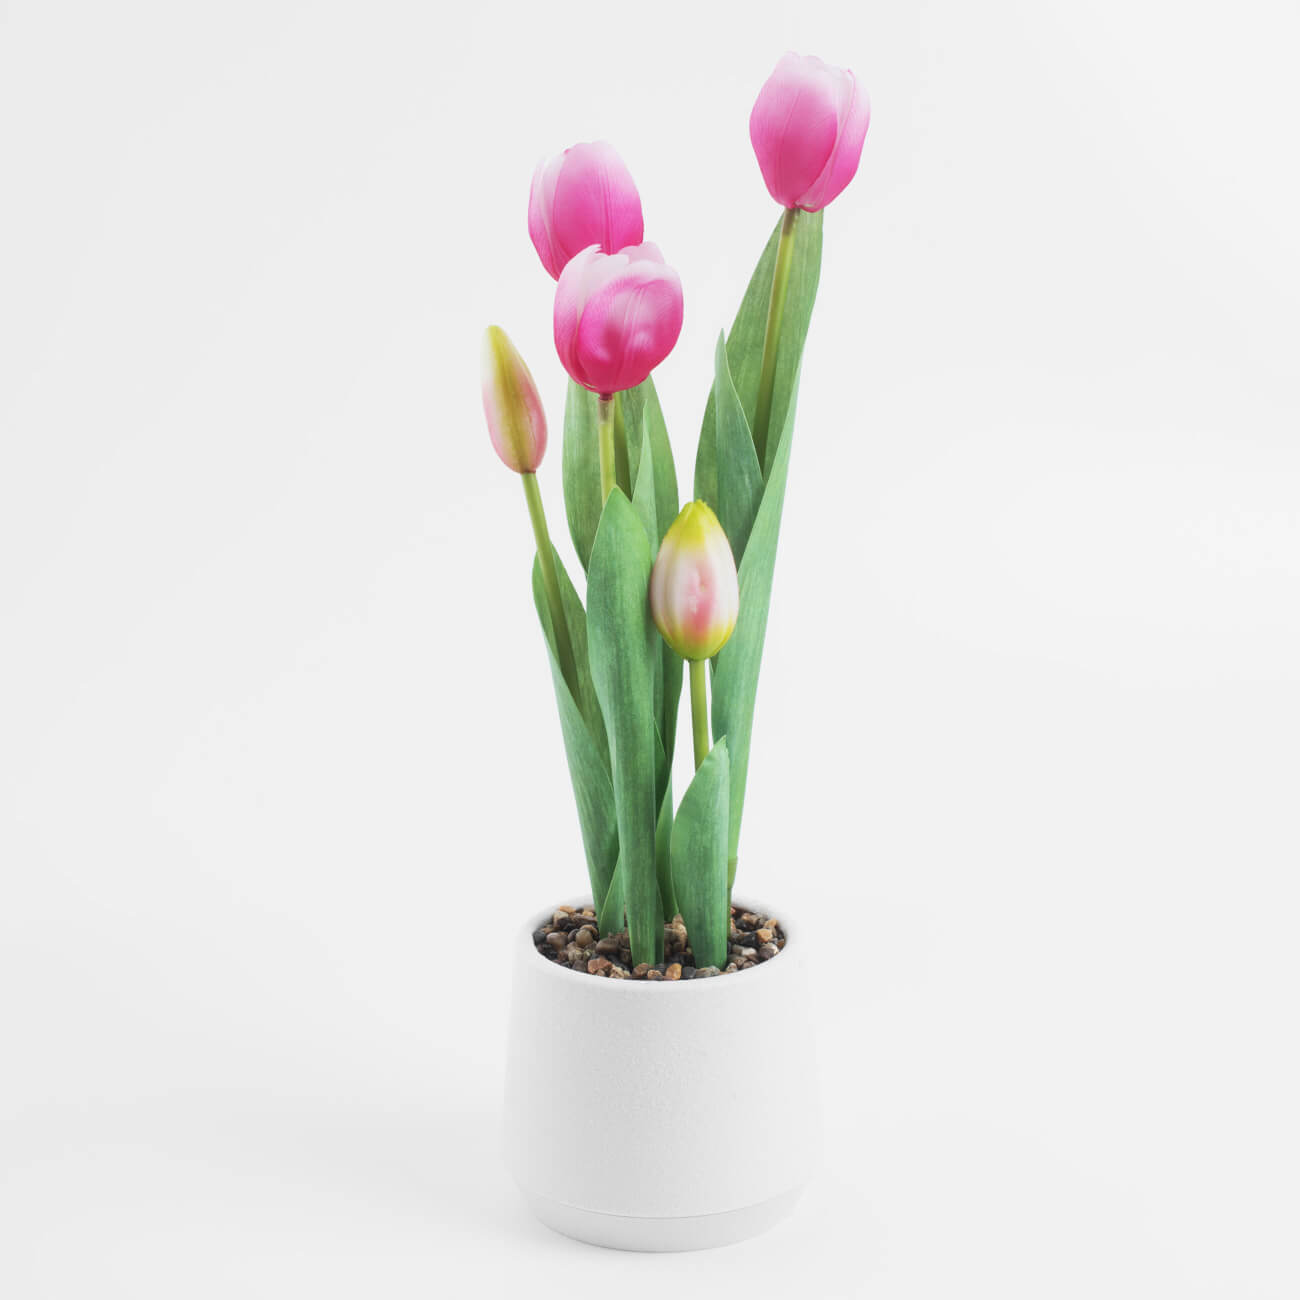 Растение искусственное, 36 см, в горшке, полиэстер/пластик, Розовые тюльпаны, Tulip garden растение силиконовое аквариумное светящееся в темноте 6 5 х 18 см фиолетовое